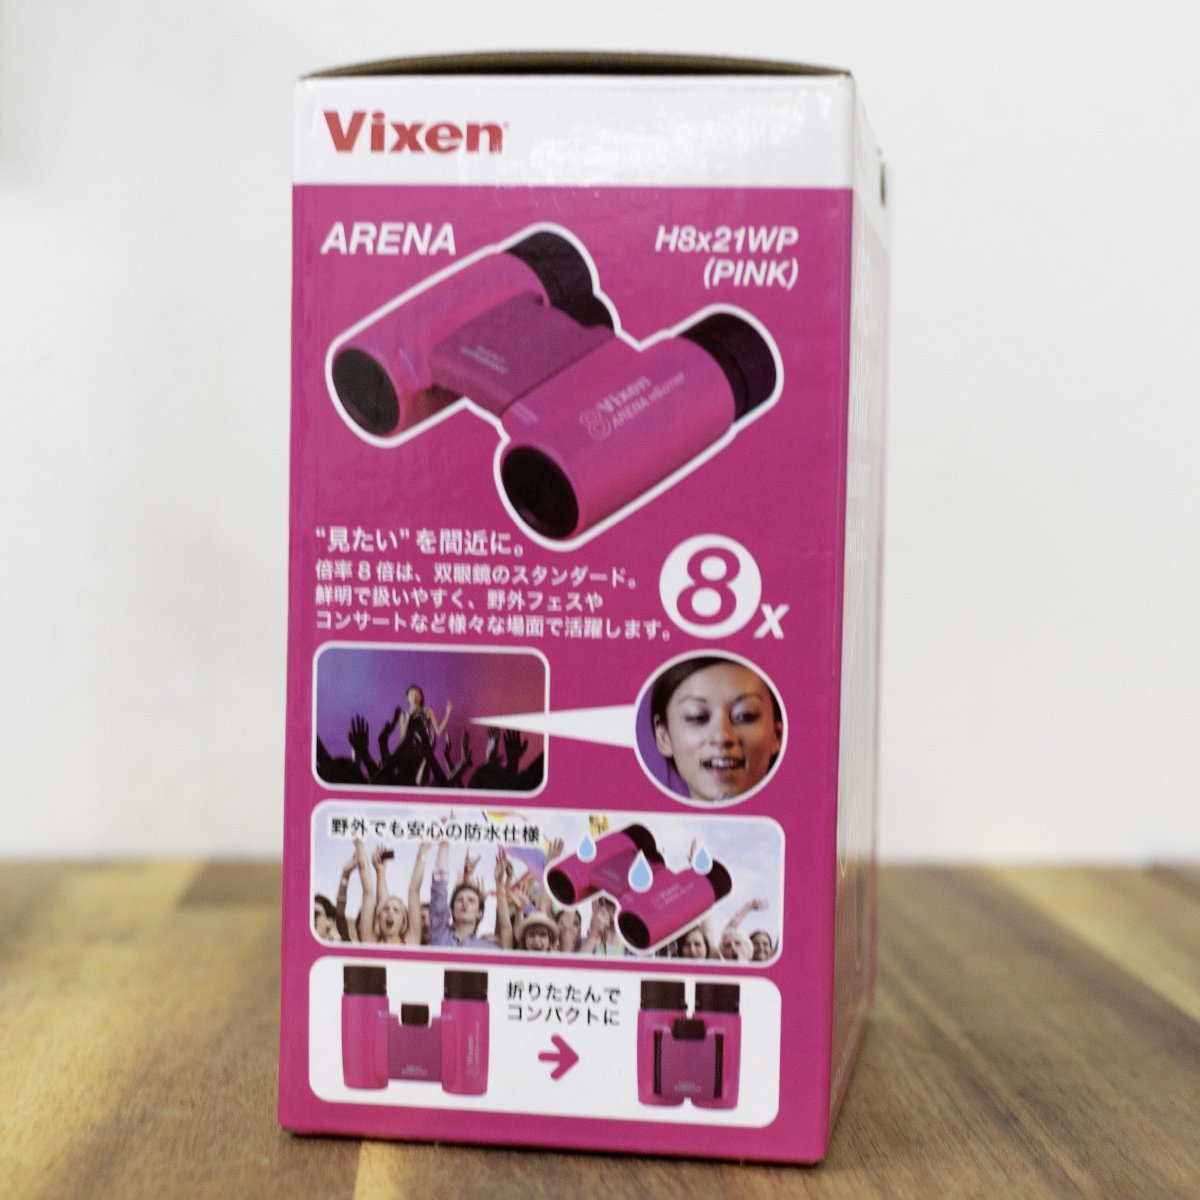 Vixen Vixen бинокль H8×21WPsolaptiLite розовый не использовался товар 